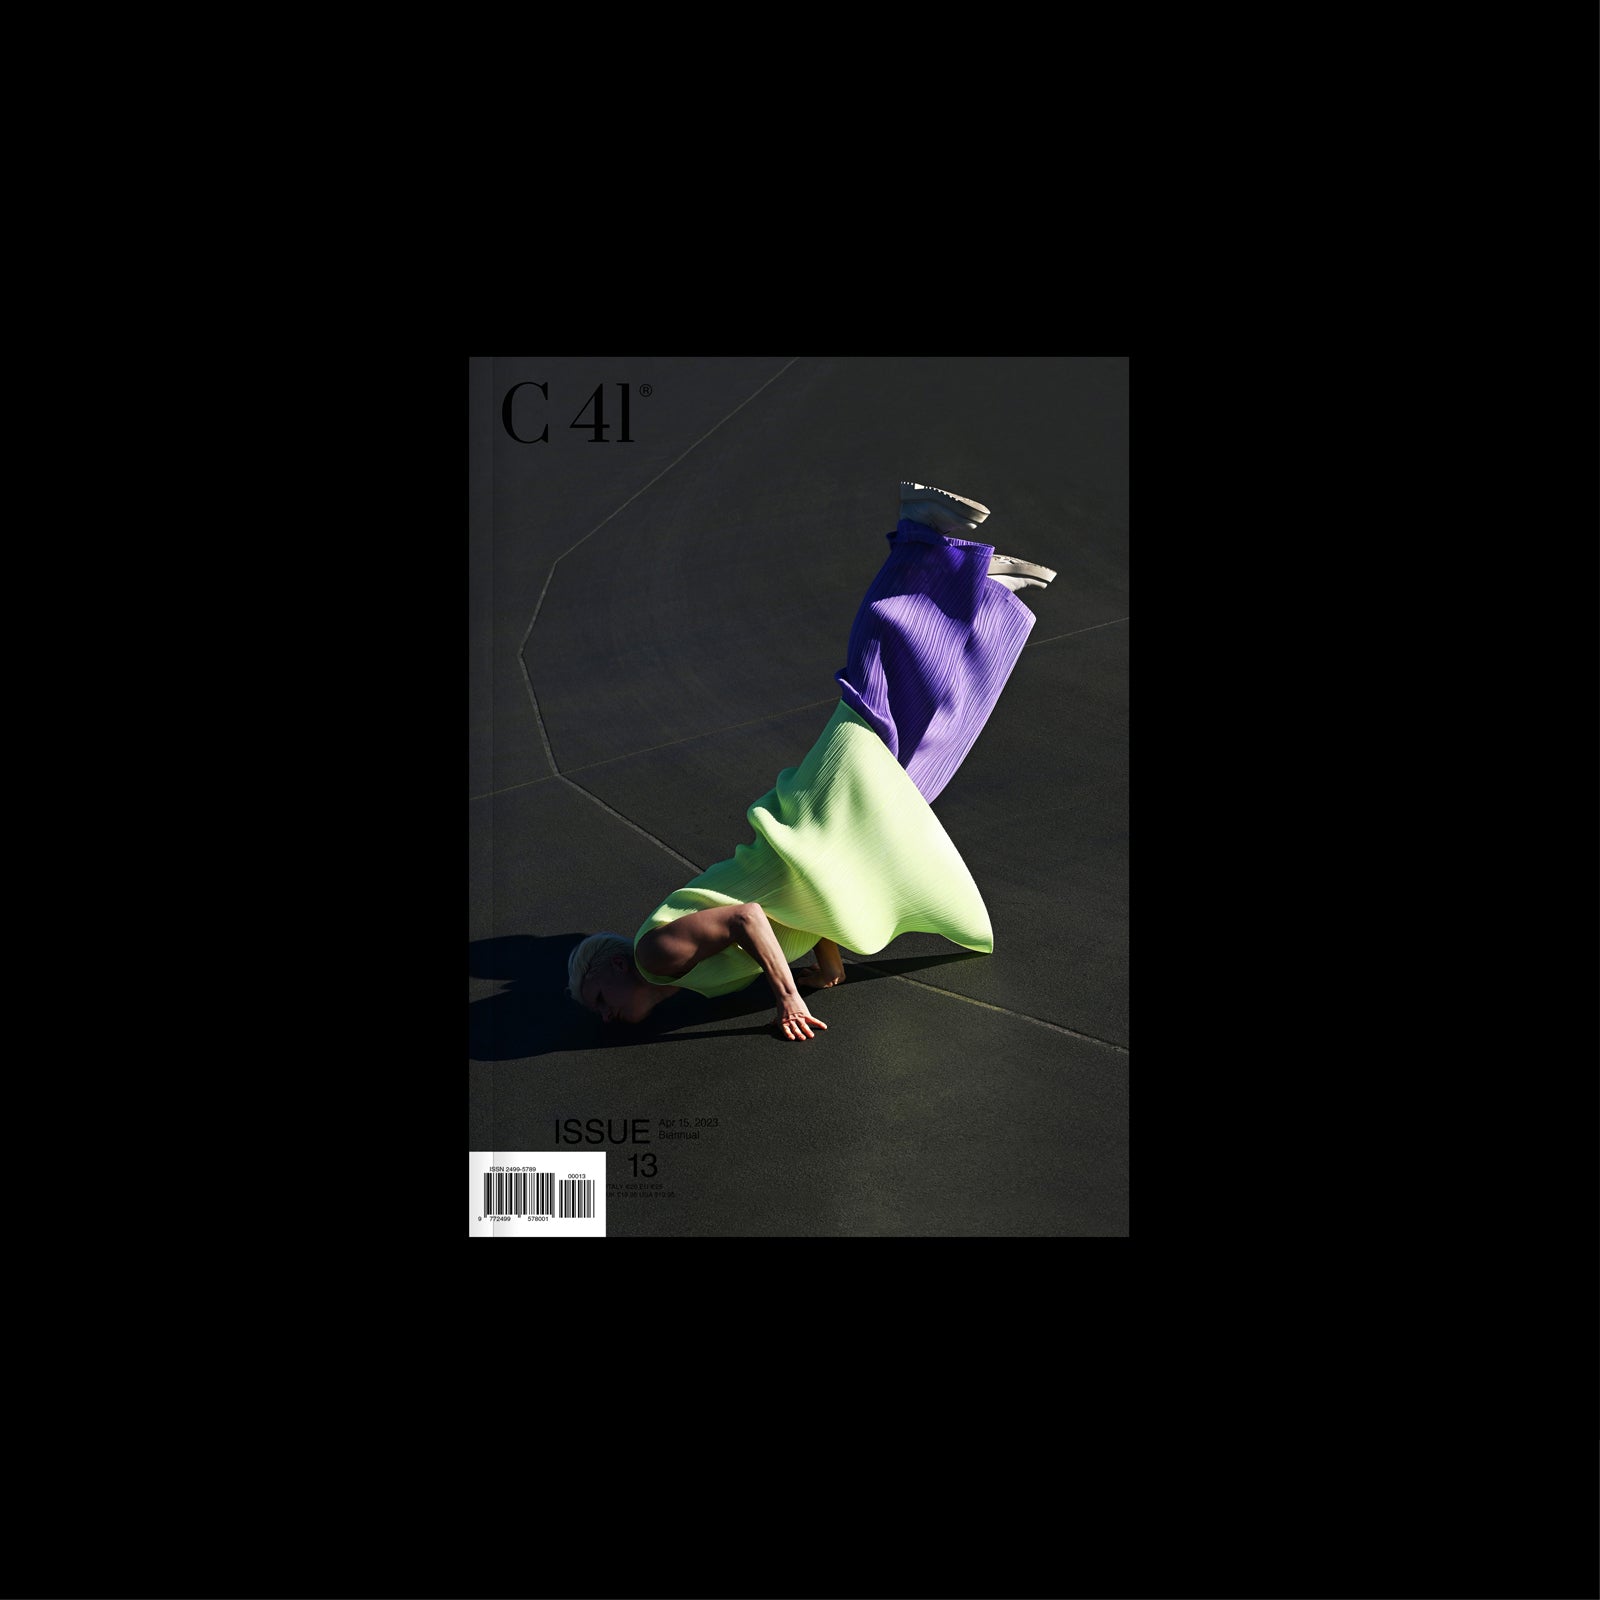 C41 Magazine Issue 13